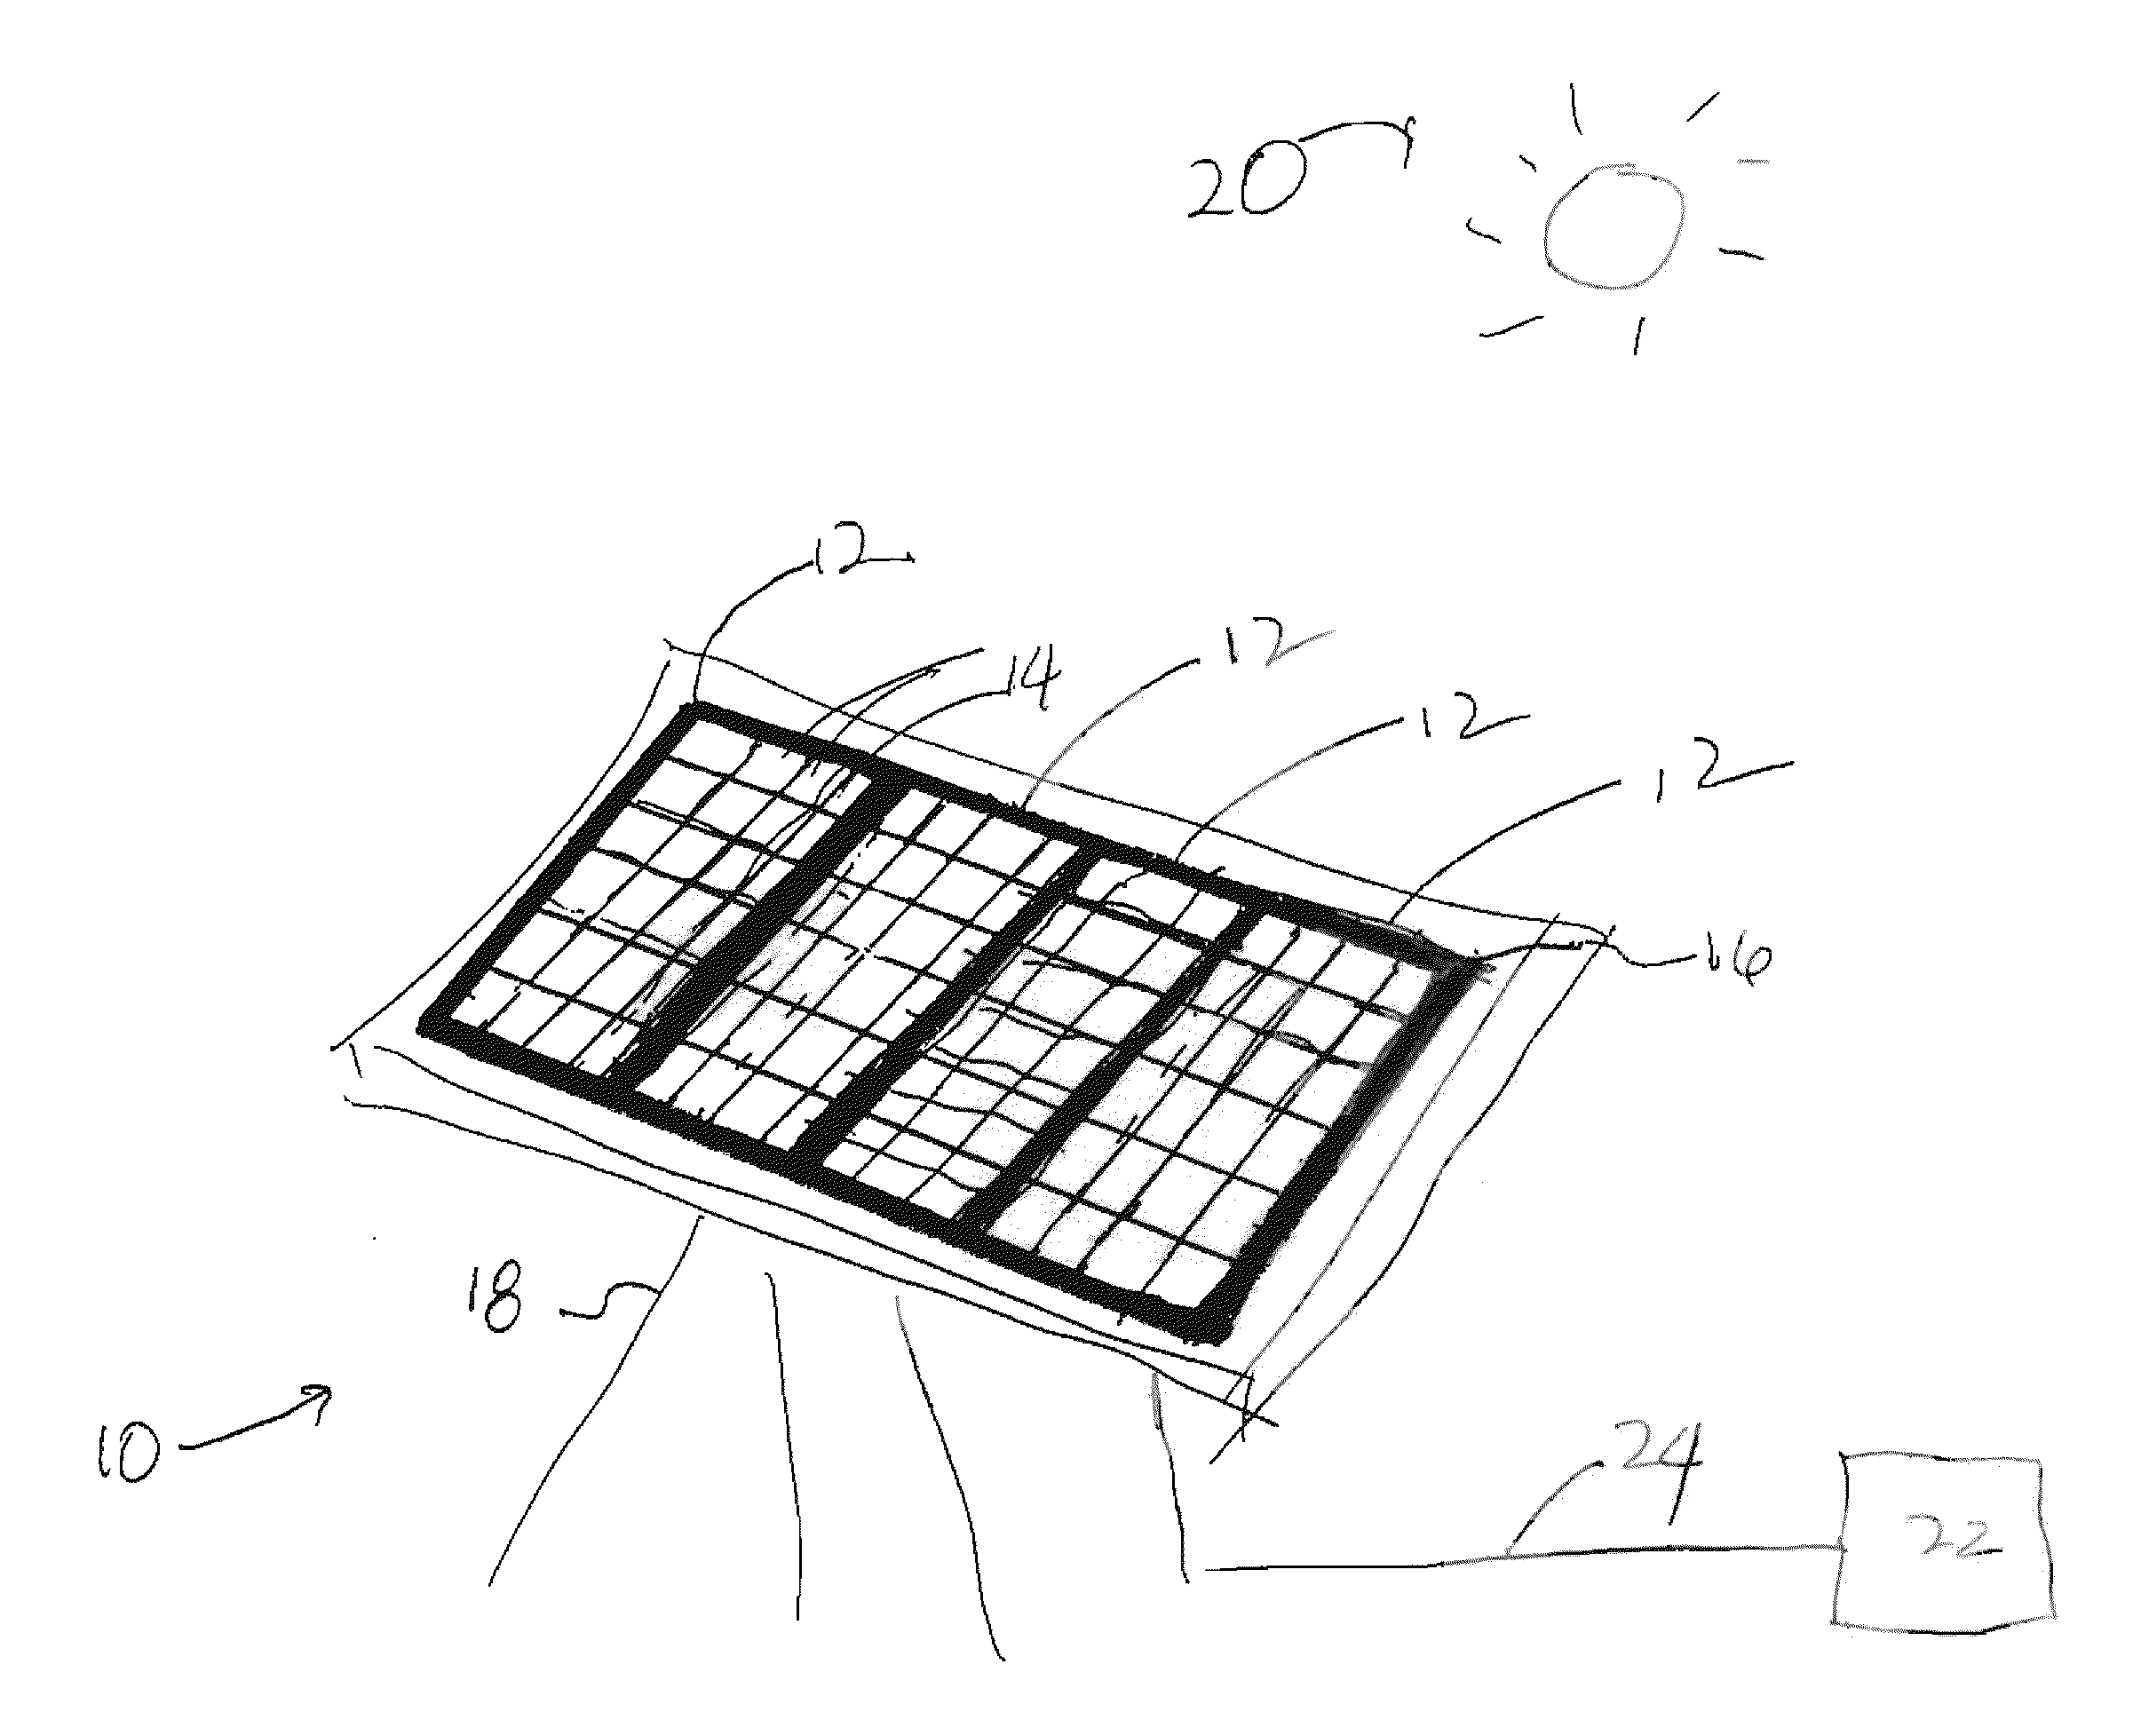 Solar collector